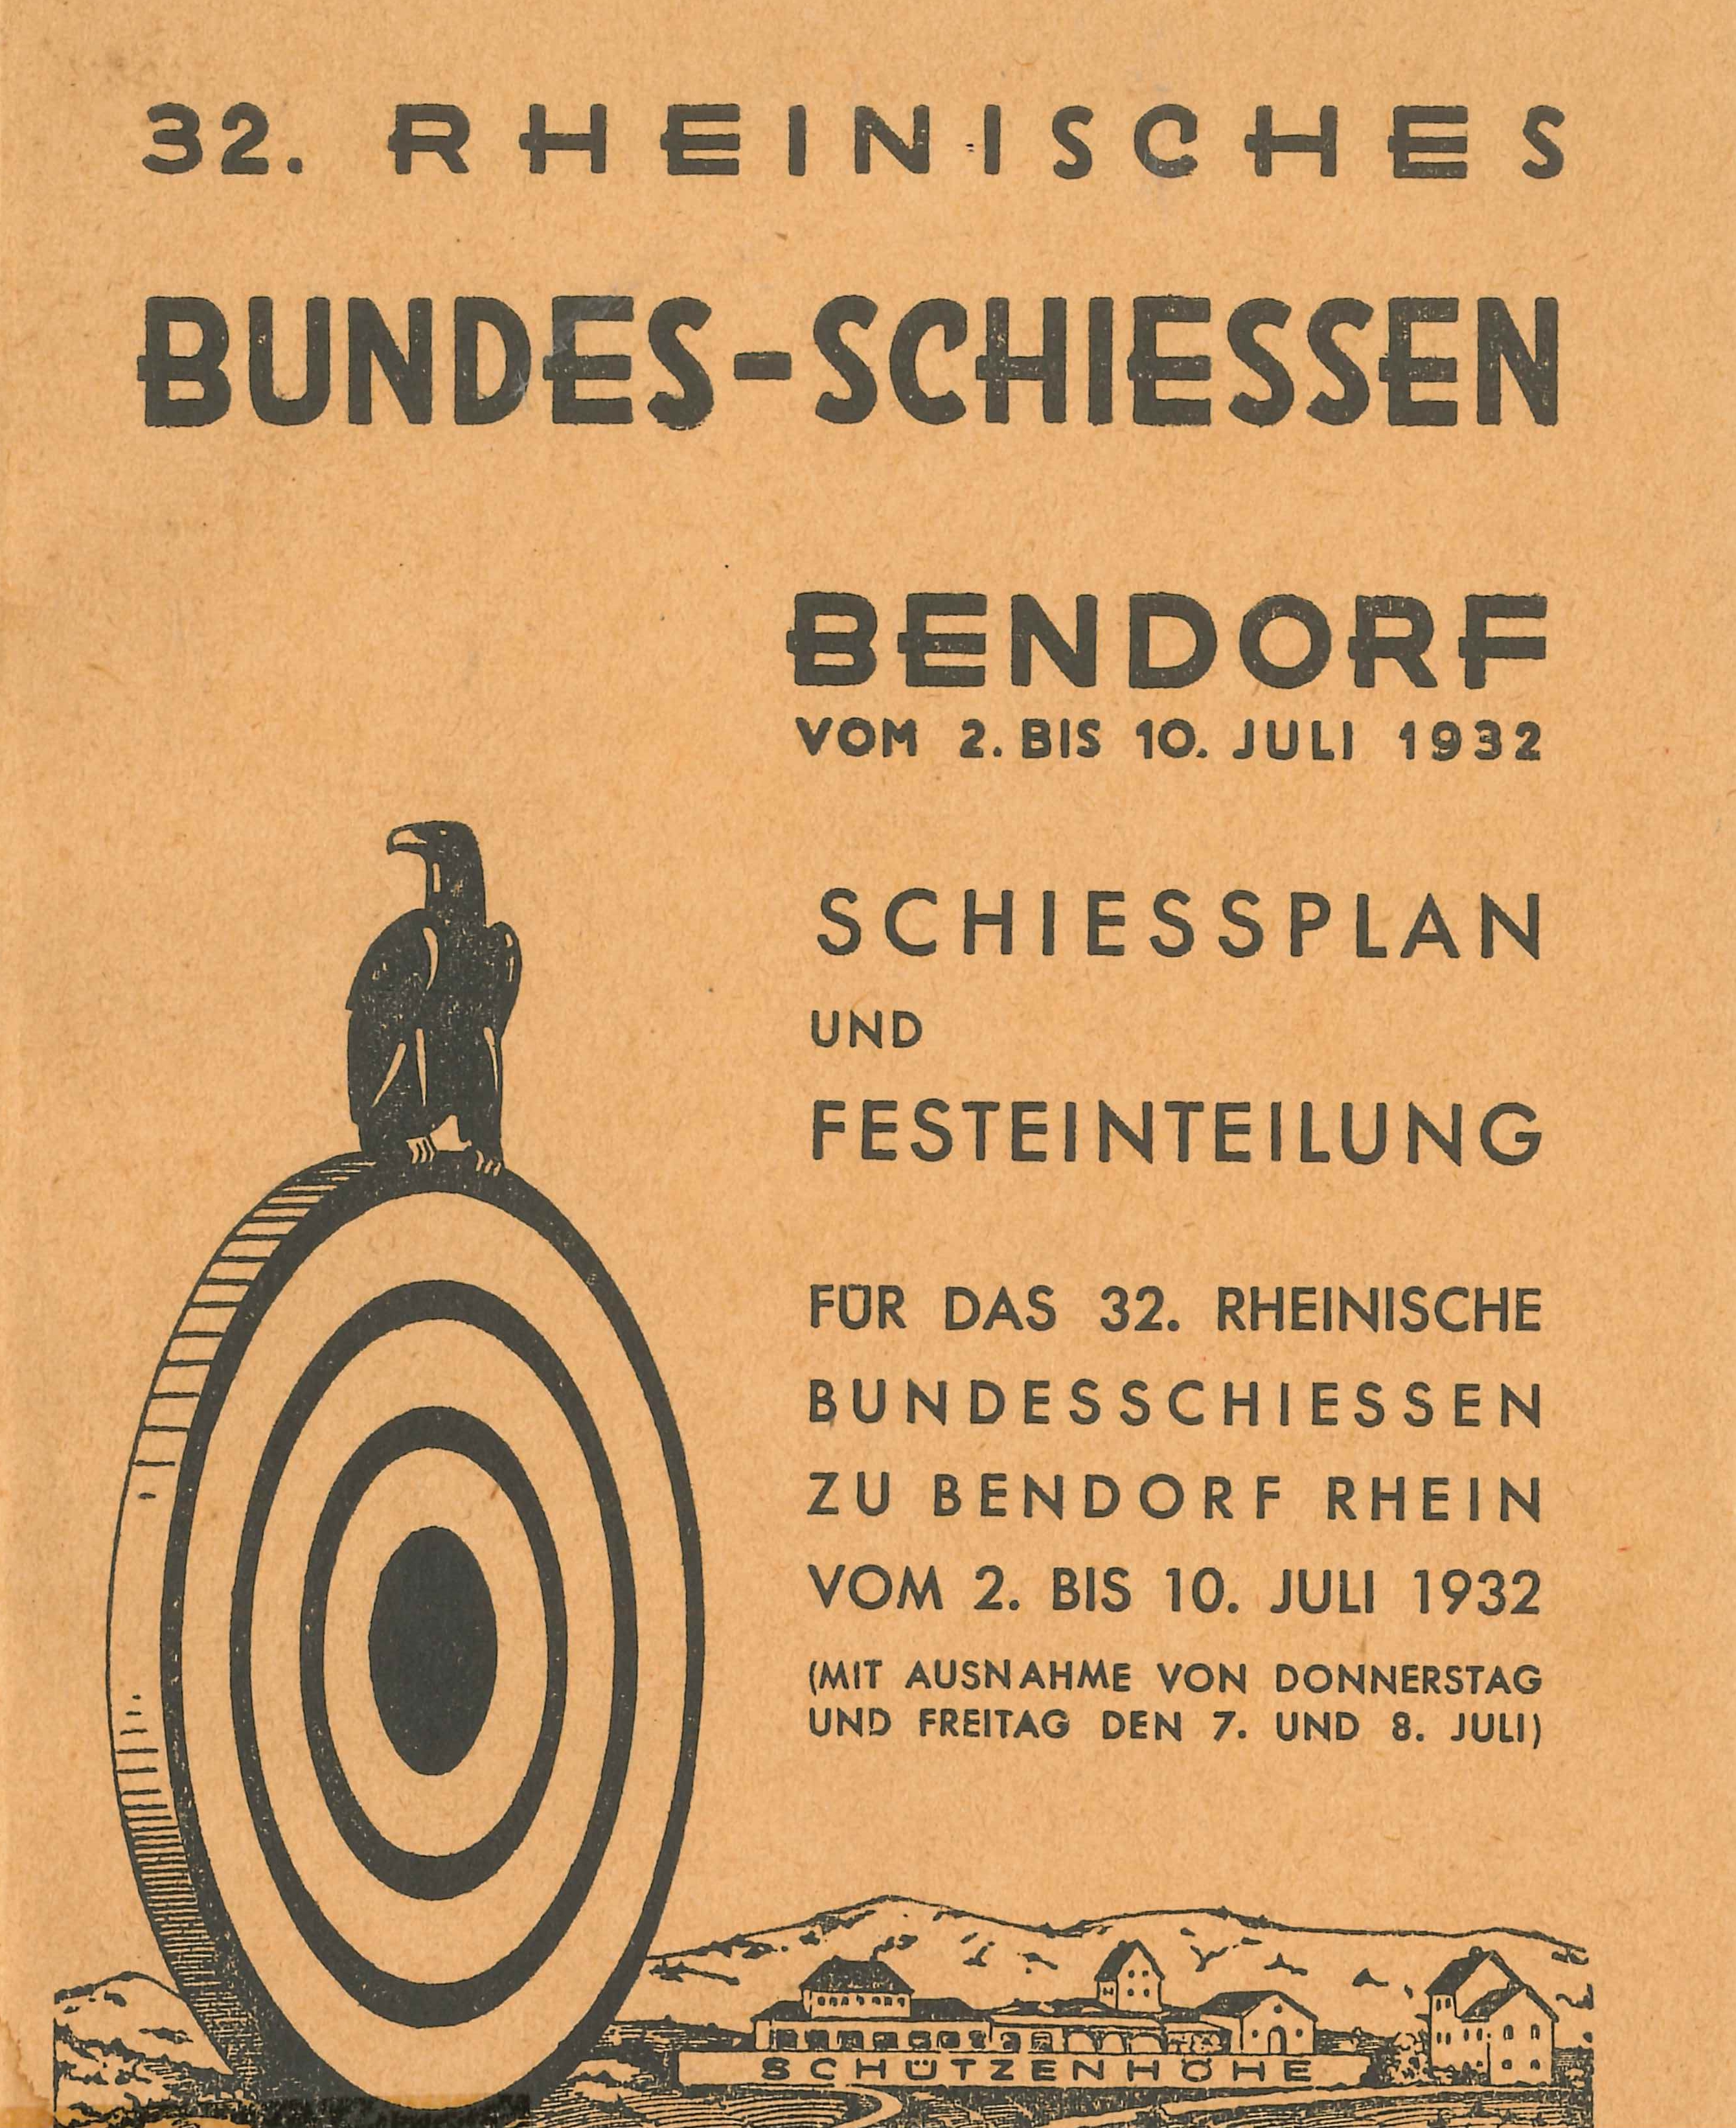 Broschüre 32. Rheinisches Bundesschießen, Bendorf 1932 (Rheinisches Eisenkunstguss-Museum CC BY-NC-SA)